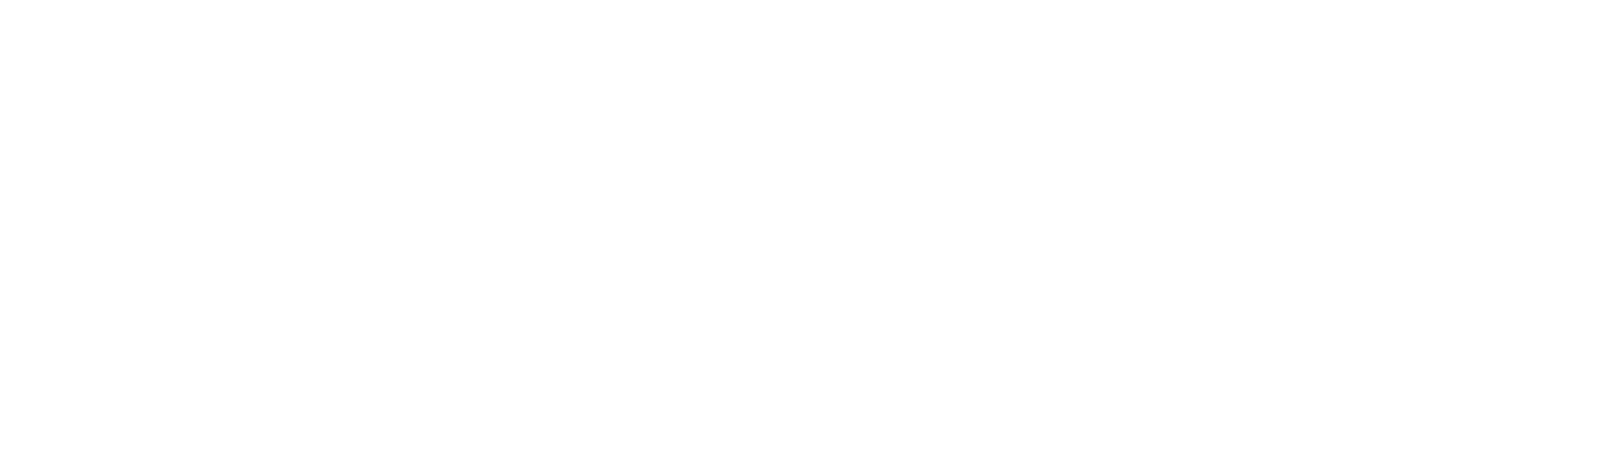 WTTW Logo - Outside In: The WTTW | WFMT Speaker Series | WTTW Chicago